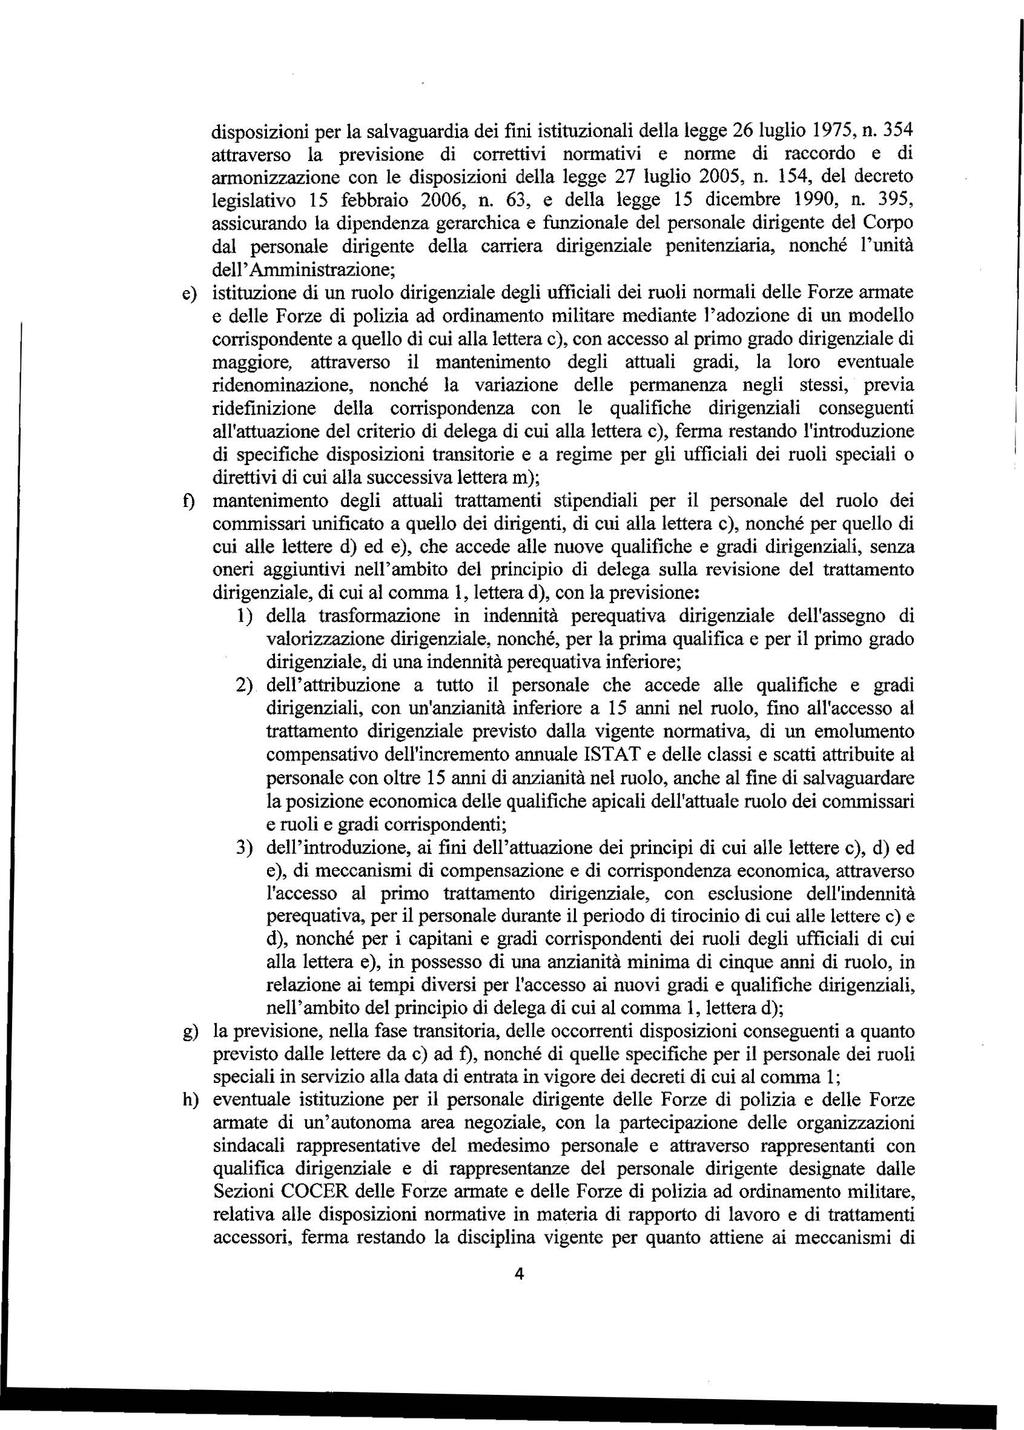 disposizioni per la salvaguardia dei fini istituzionali della legge 26 luglio 1975, n.